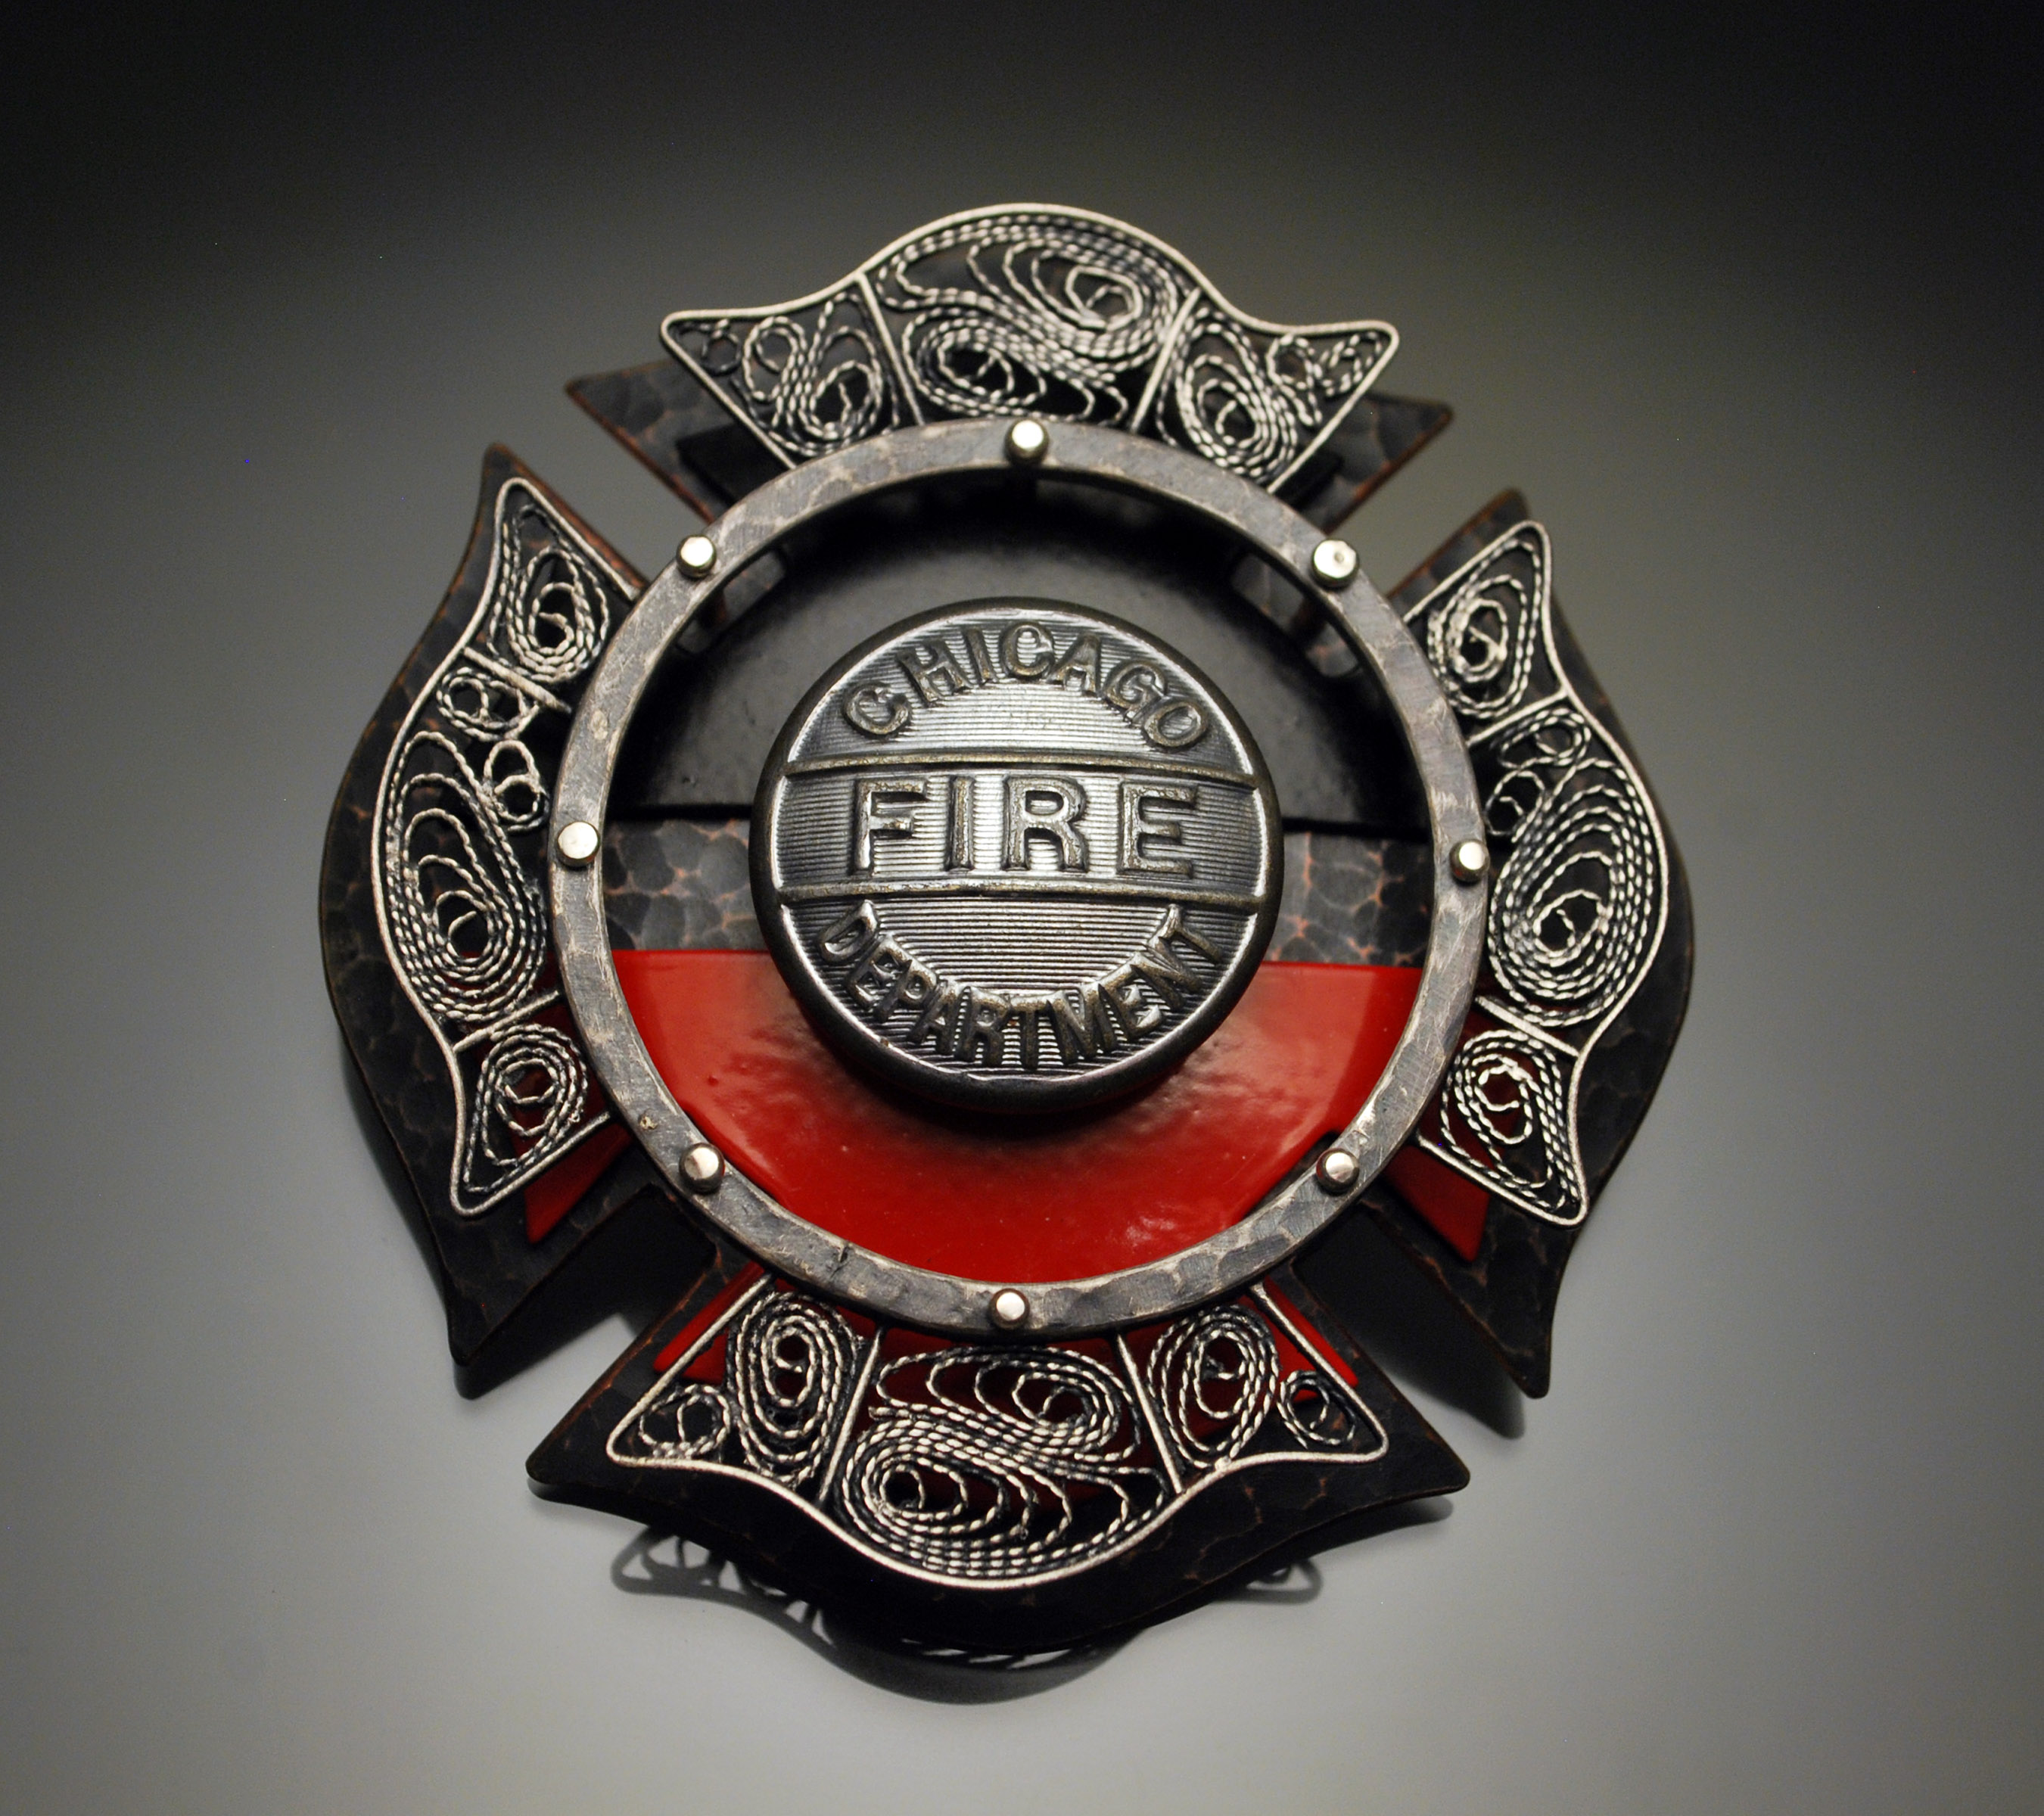 Chicago Fire Department Badges Meghann Sottile Metalsmith Maker